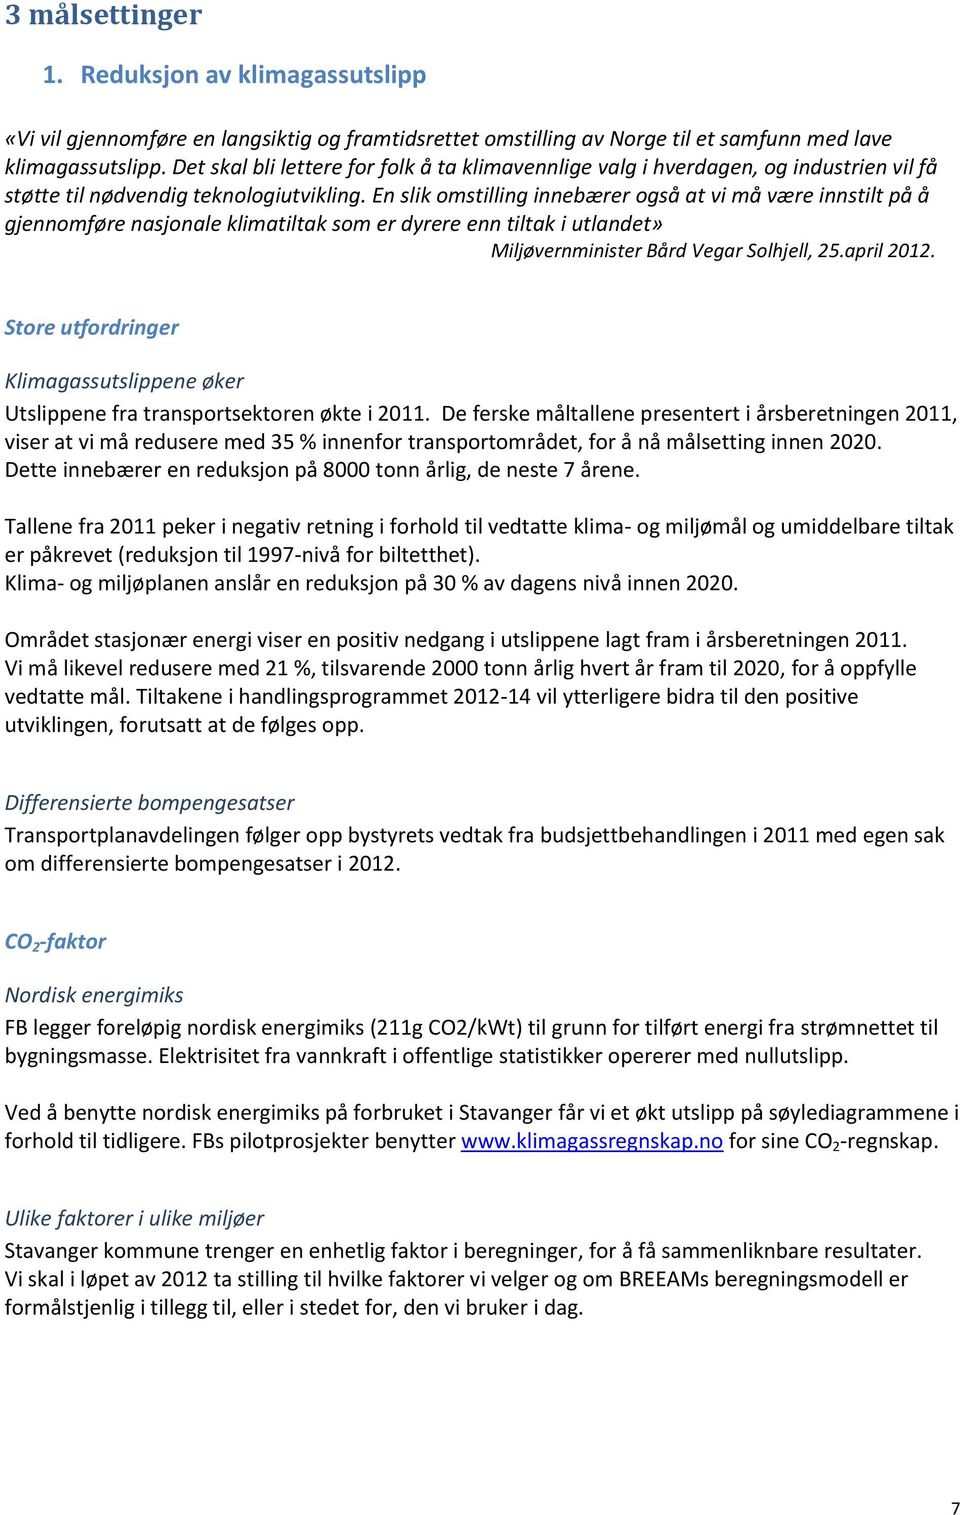 En slik omstilling innebærer også at vi må være innstilt på å gjennomføre nasjonale klimatiltak som er dyrere enn tiltak i utlandet» Miljøvernminister Bård Vegar Solhjell, 25.april 2012.